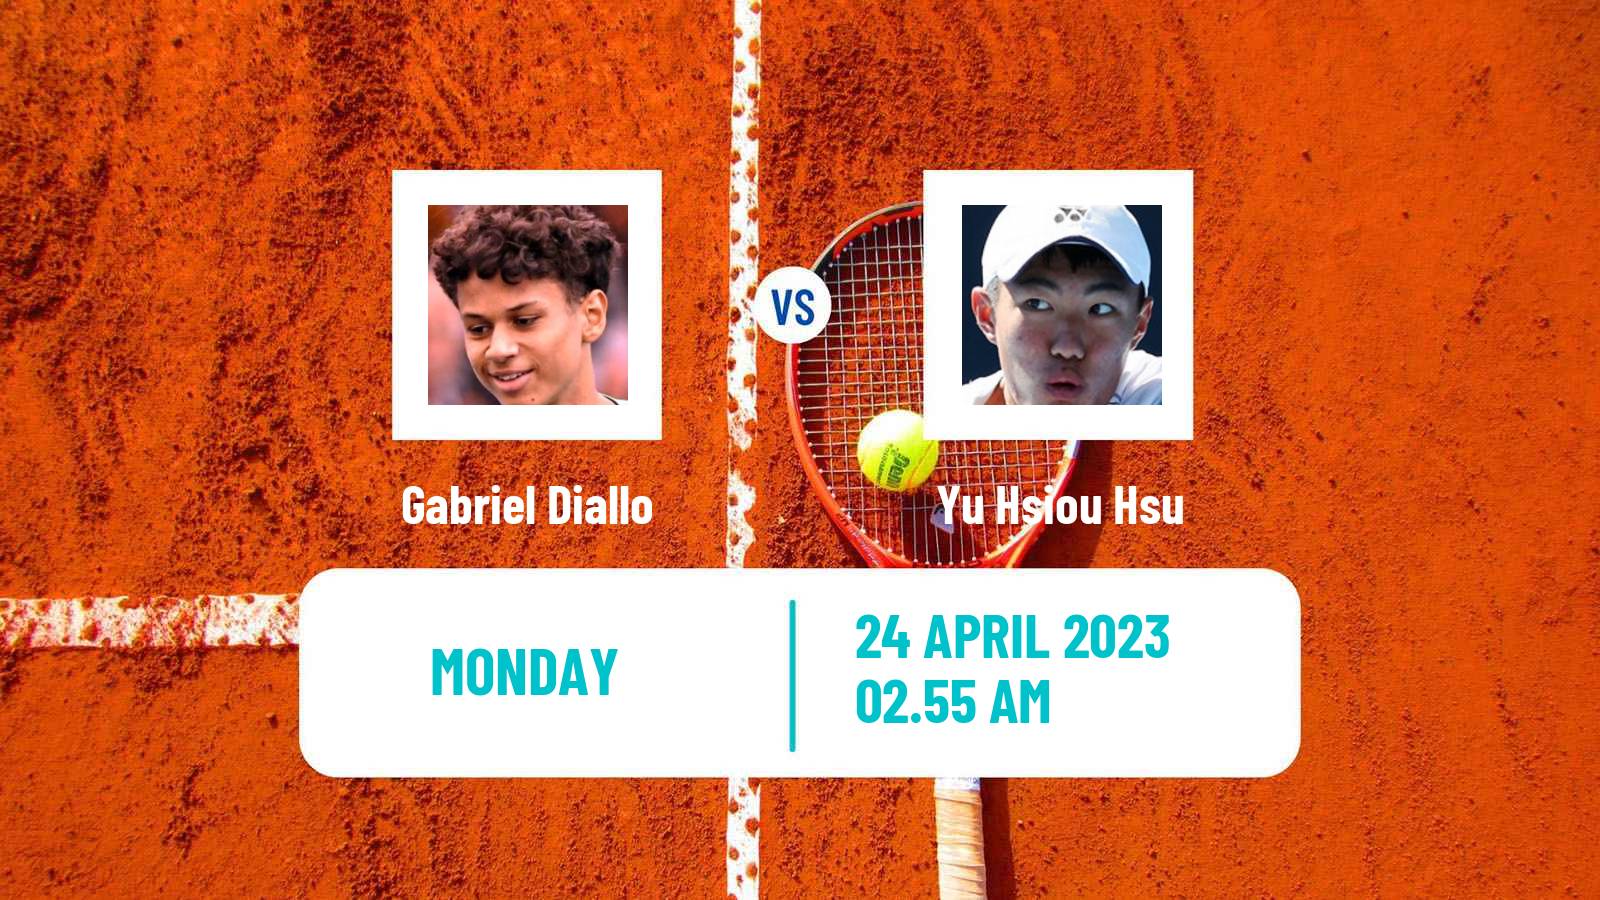 Tennis ATP Challenger Gabriel Diallo - Yu Hsiou Hsu